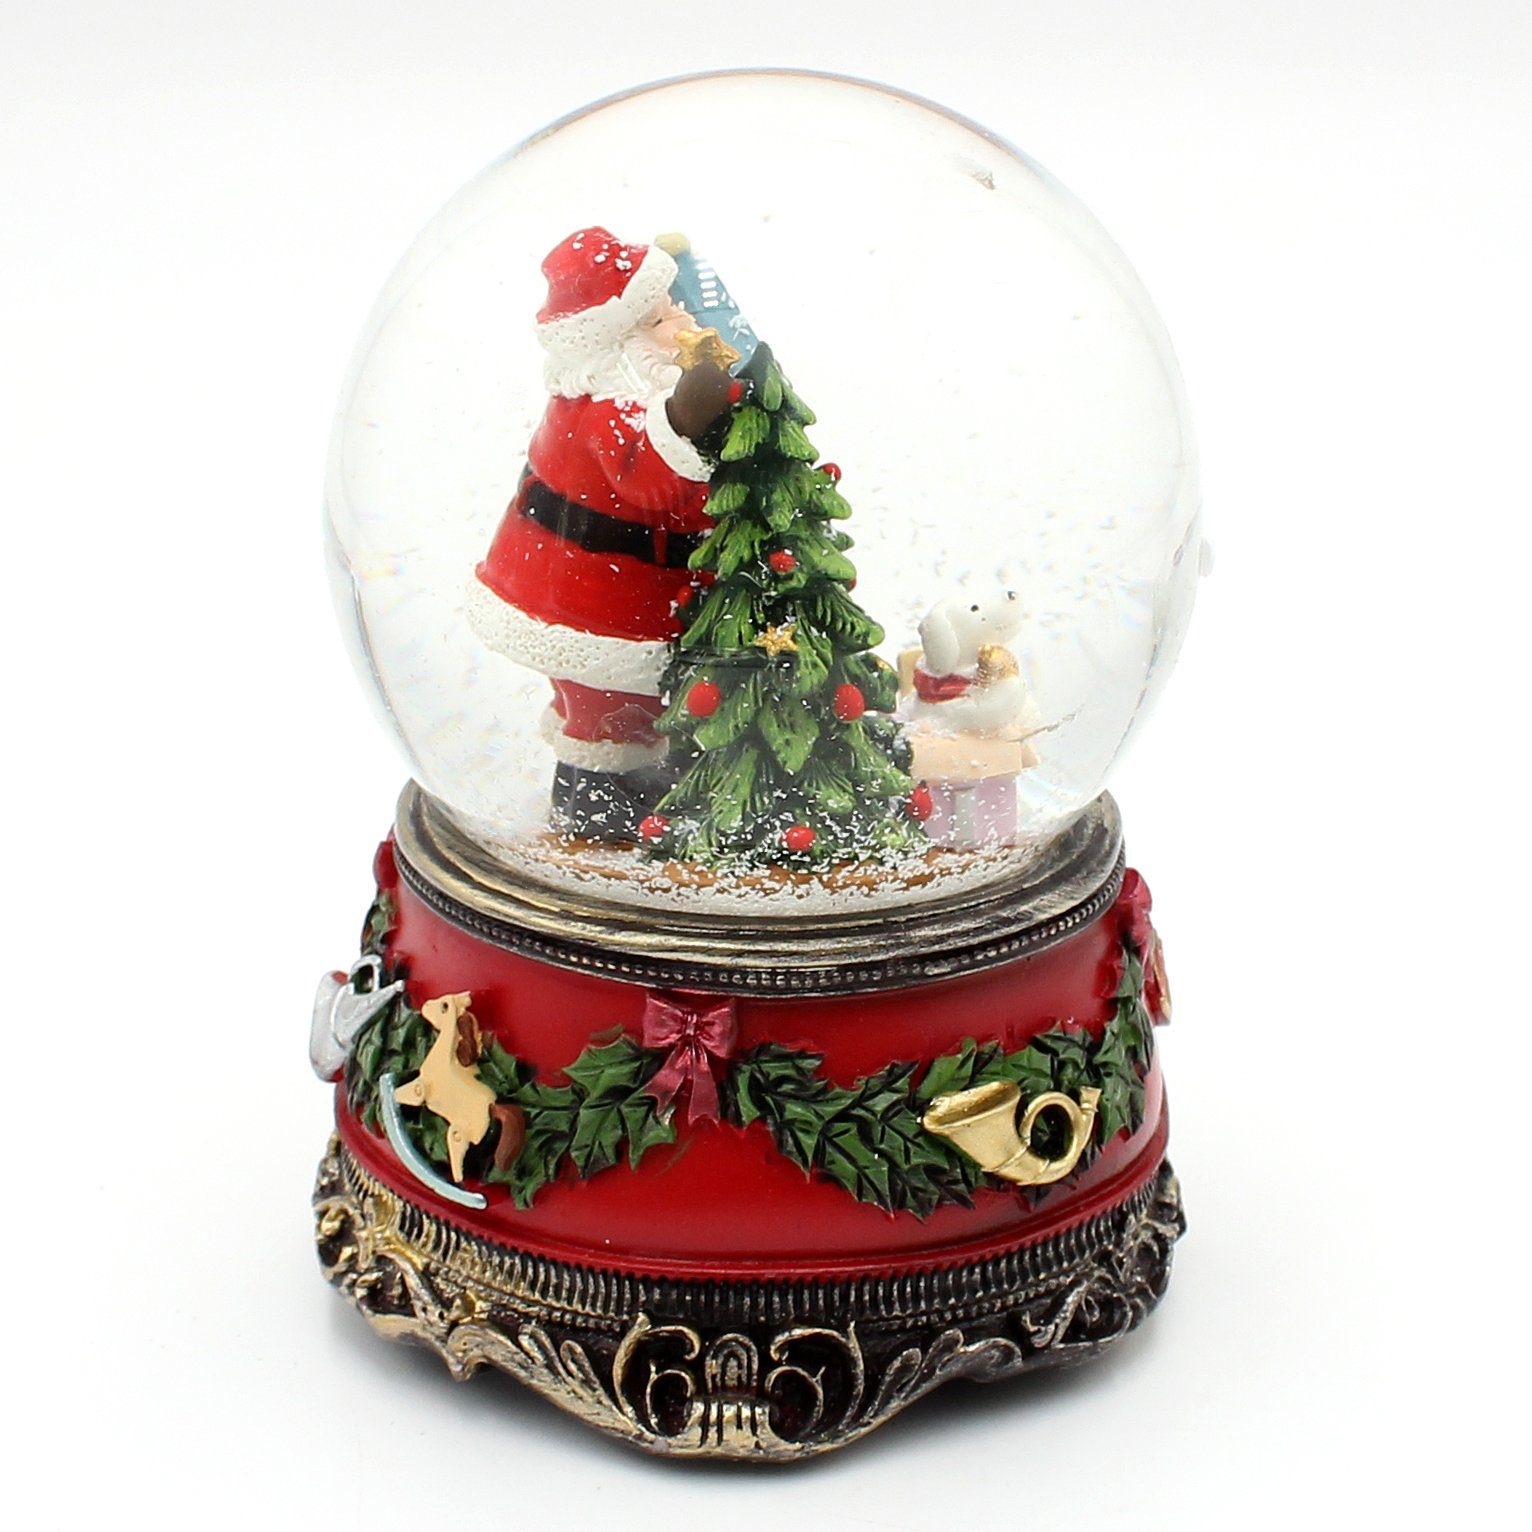 Dekohelden24 Große mit Geschenken, Schneekugel Sound, Weihnachtsmann St) mit Hund Schneekugel, (1 und